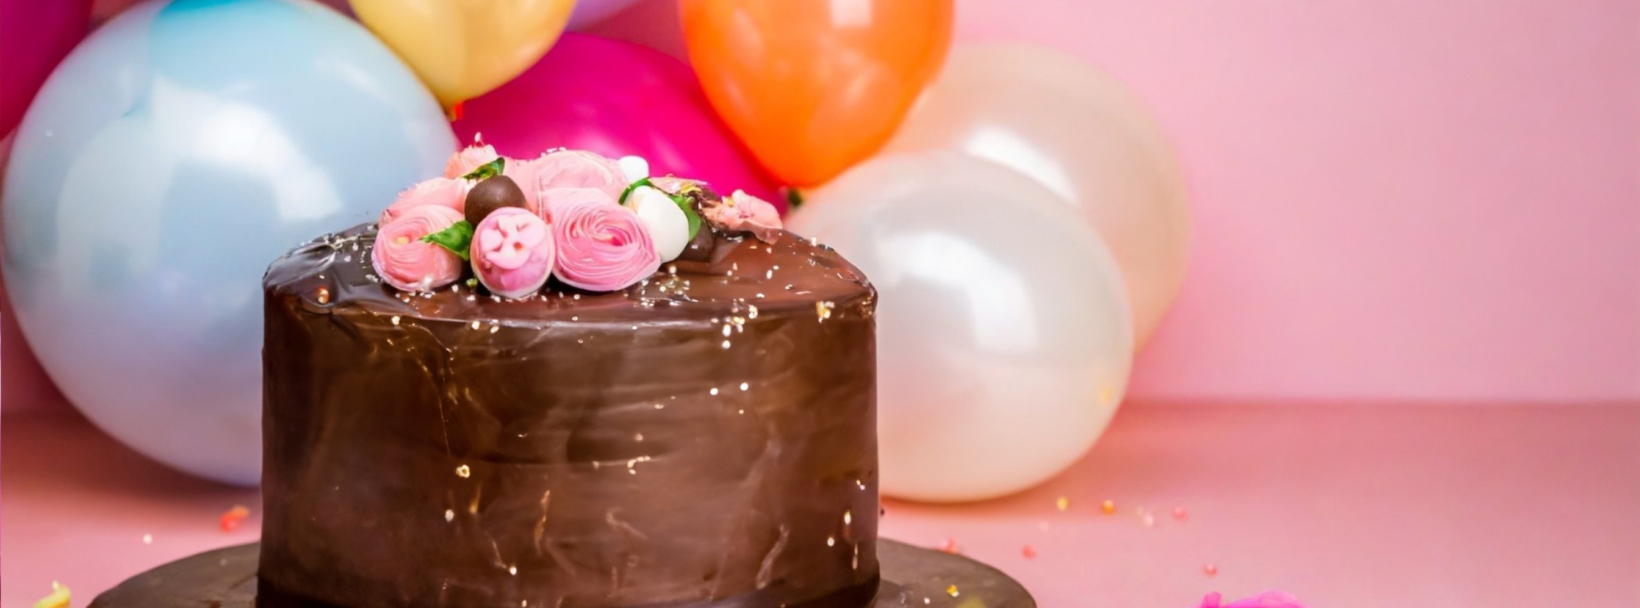 jak zaplanować imprezę urodzinową?